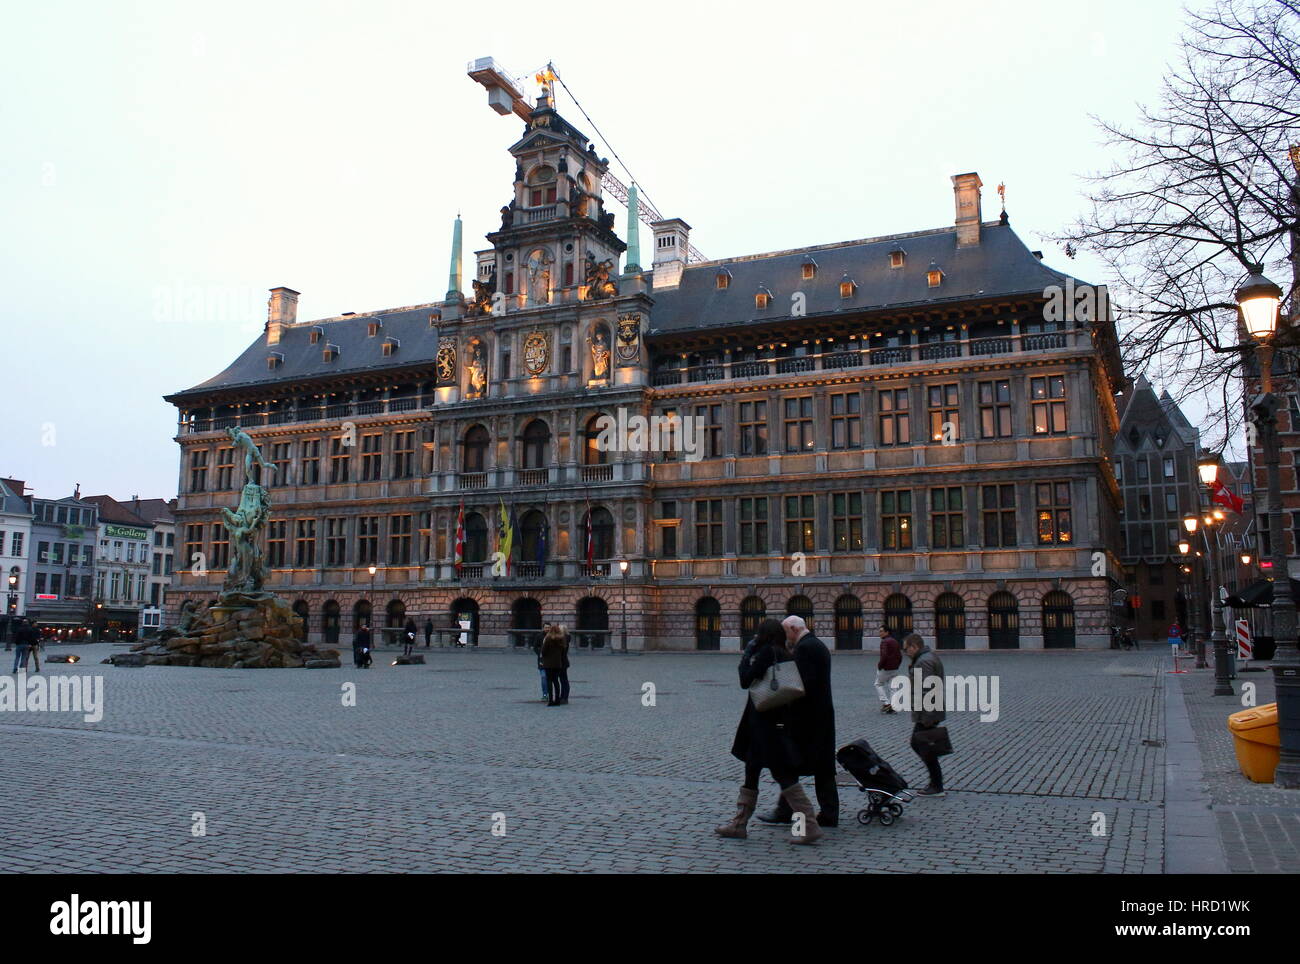 Monumental Ayuntamiento renacentista del siglo XVI (Stadhuis van Antwerpen), Antwerp, Bélgica. Foto de stock